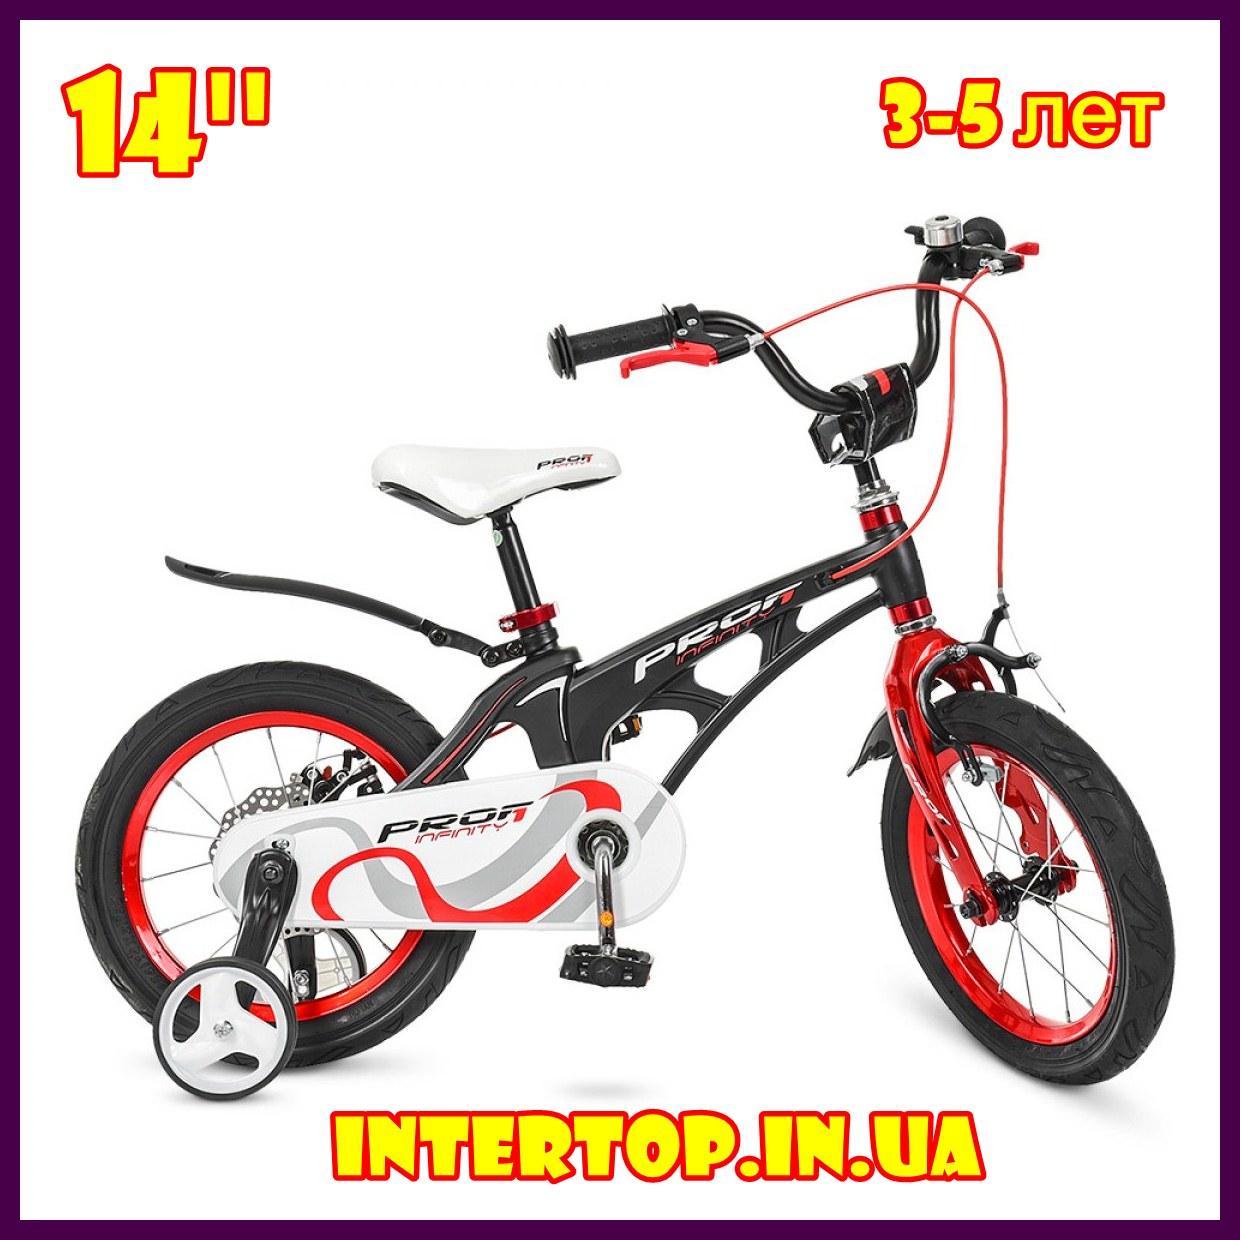 Дитячий двоколісний велосипед Profi Infinity 14 дюймів на магнієвої рамі чорно-червоний матовий. Для дітей 3-5